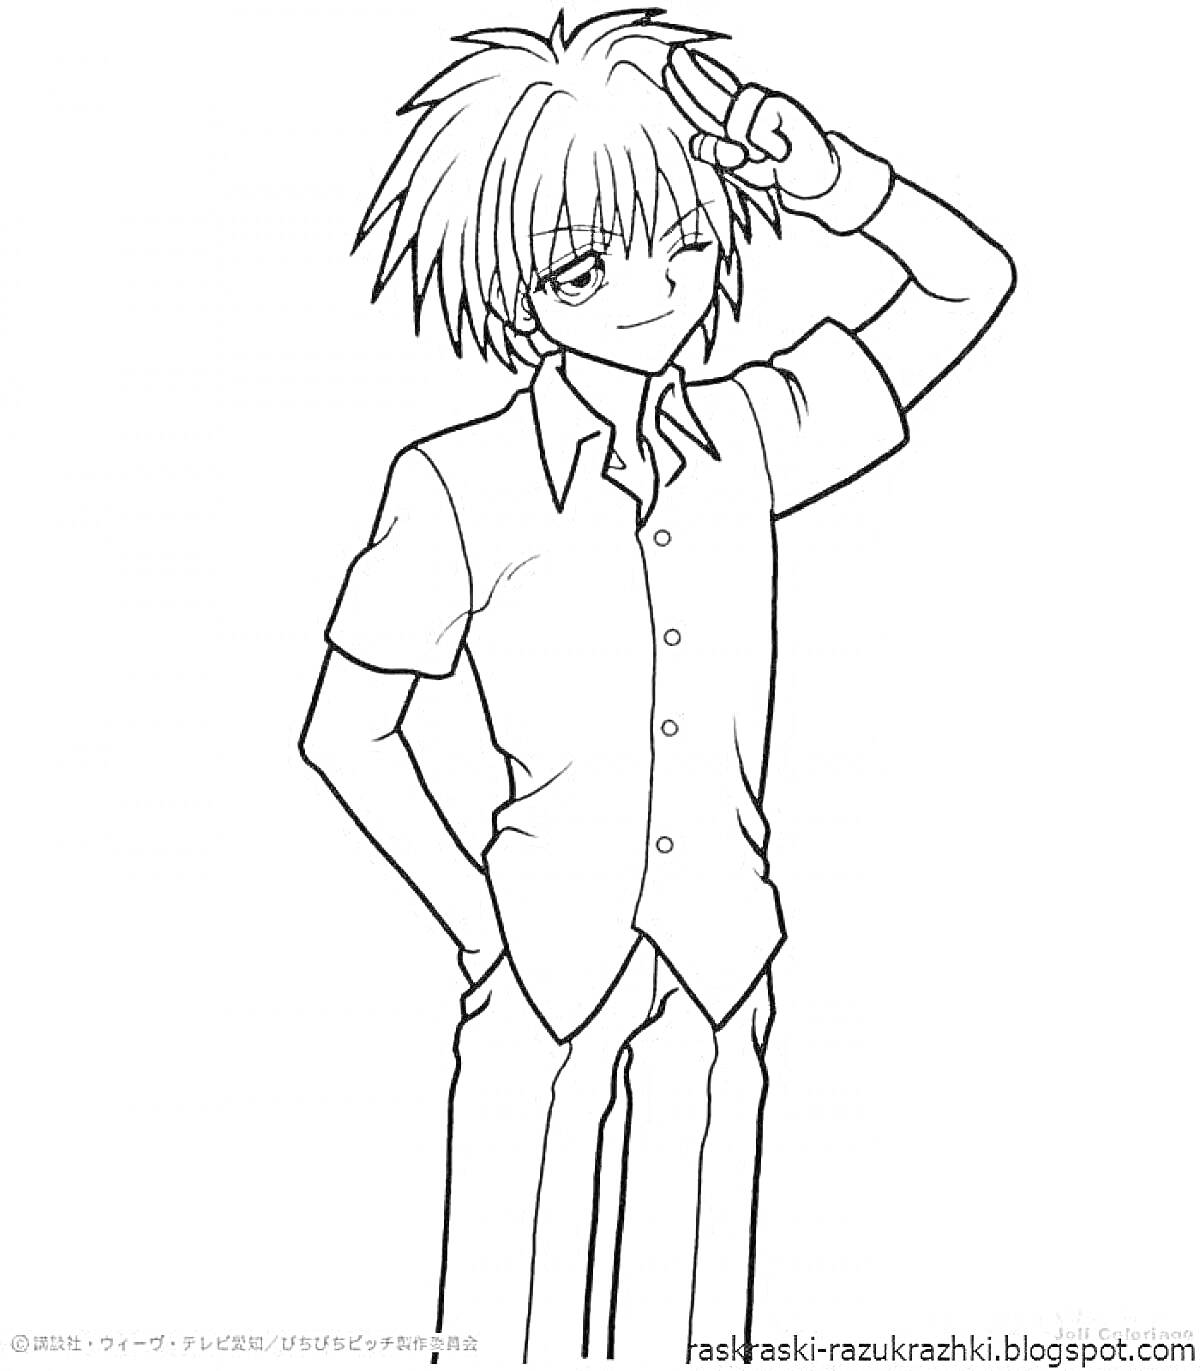 Раскраска Аниме мальчик в рубашке со знаком руками на голове